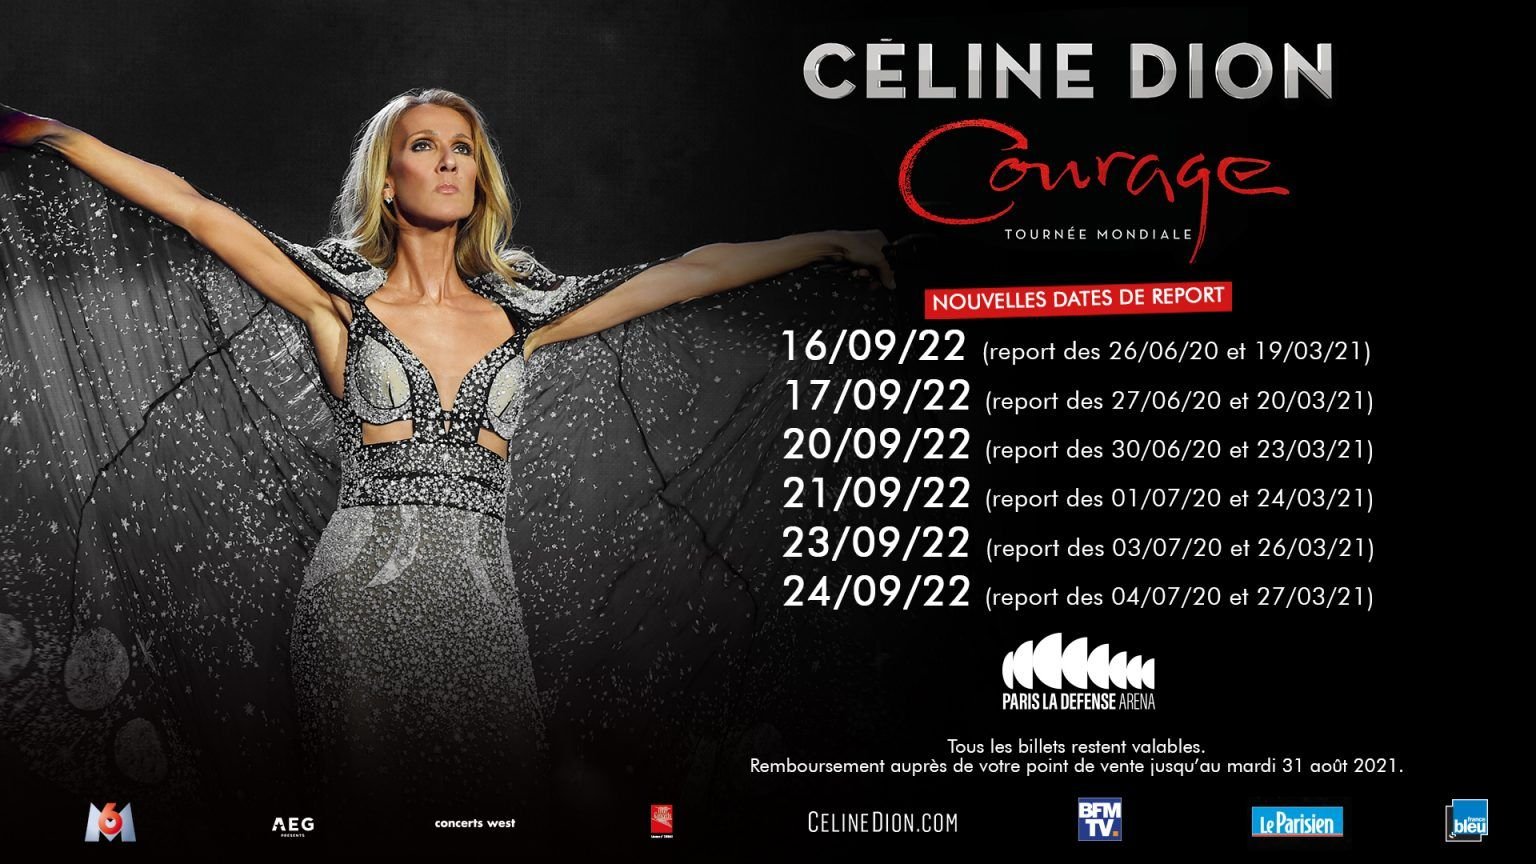 Concert Courage Céline Dion 